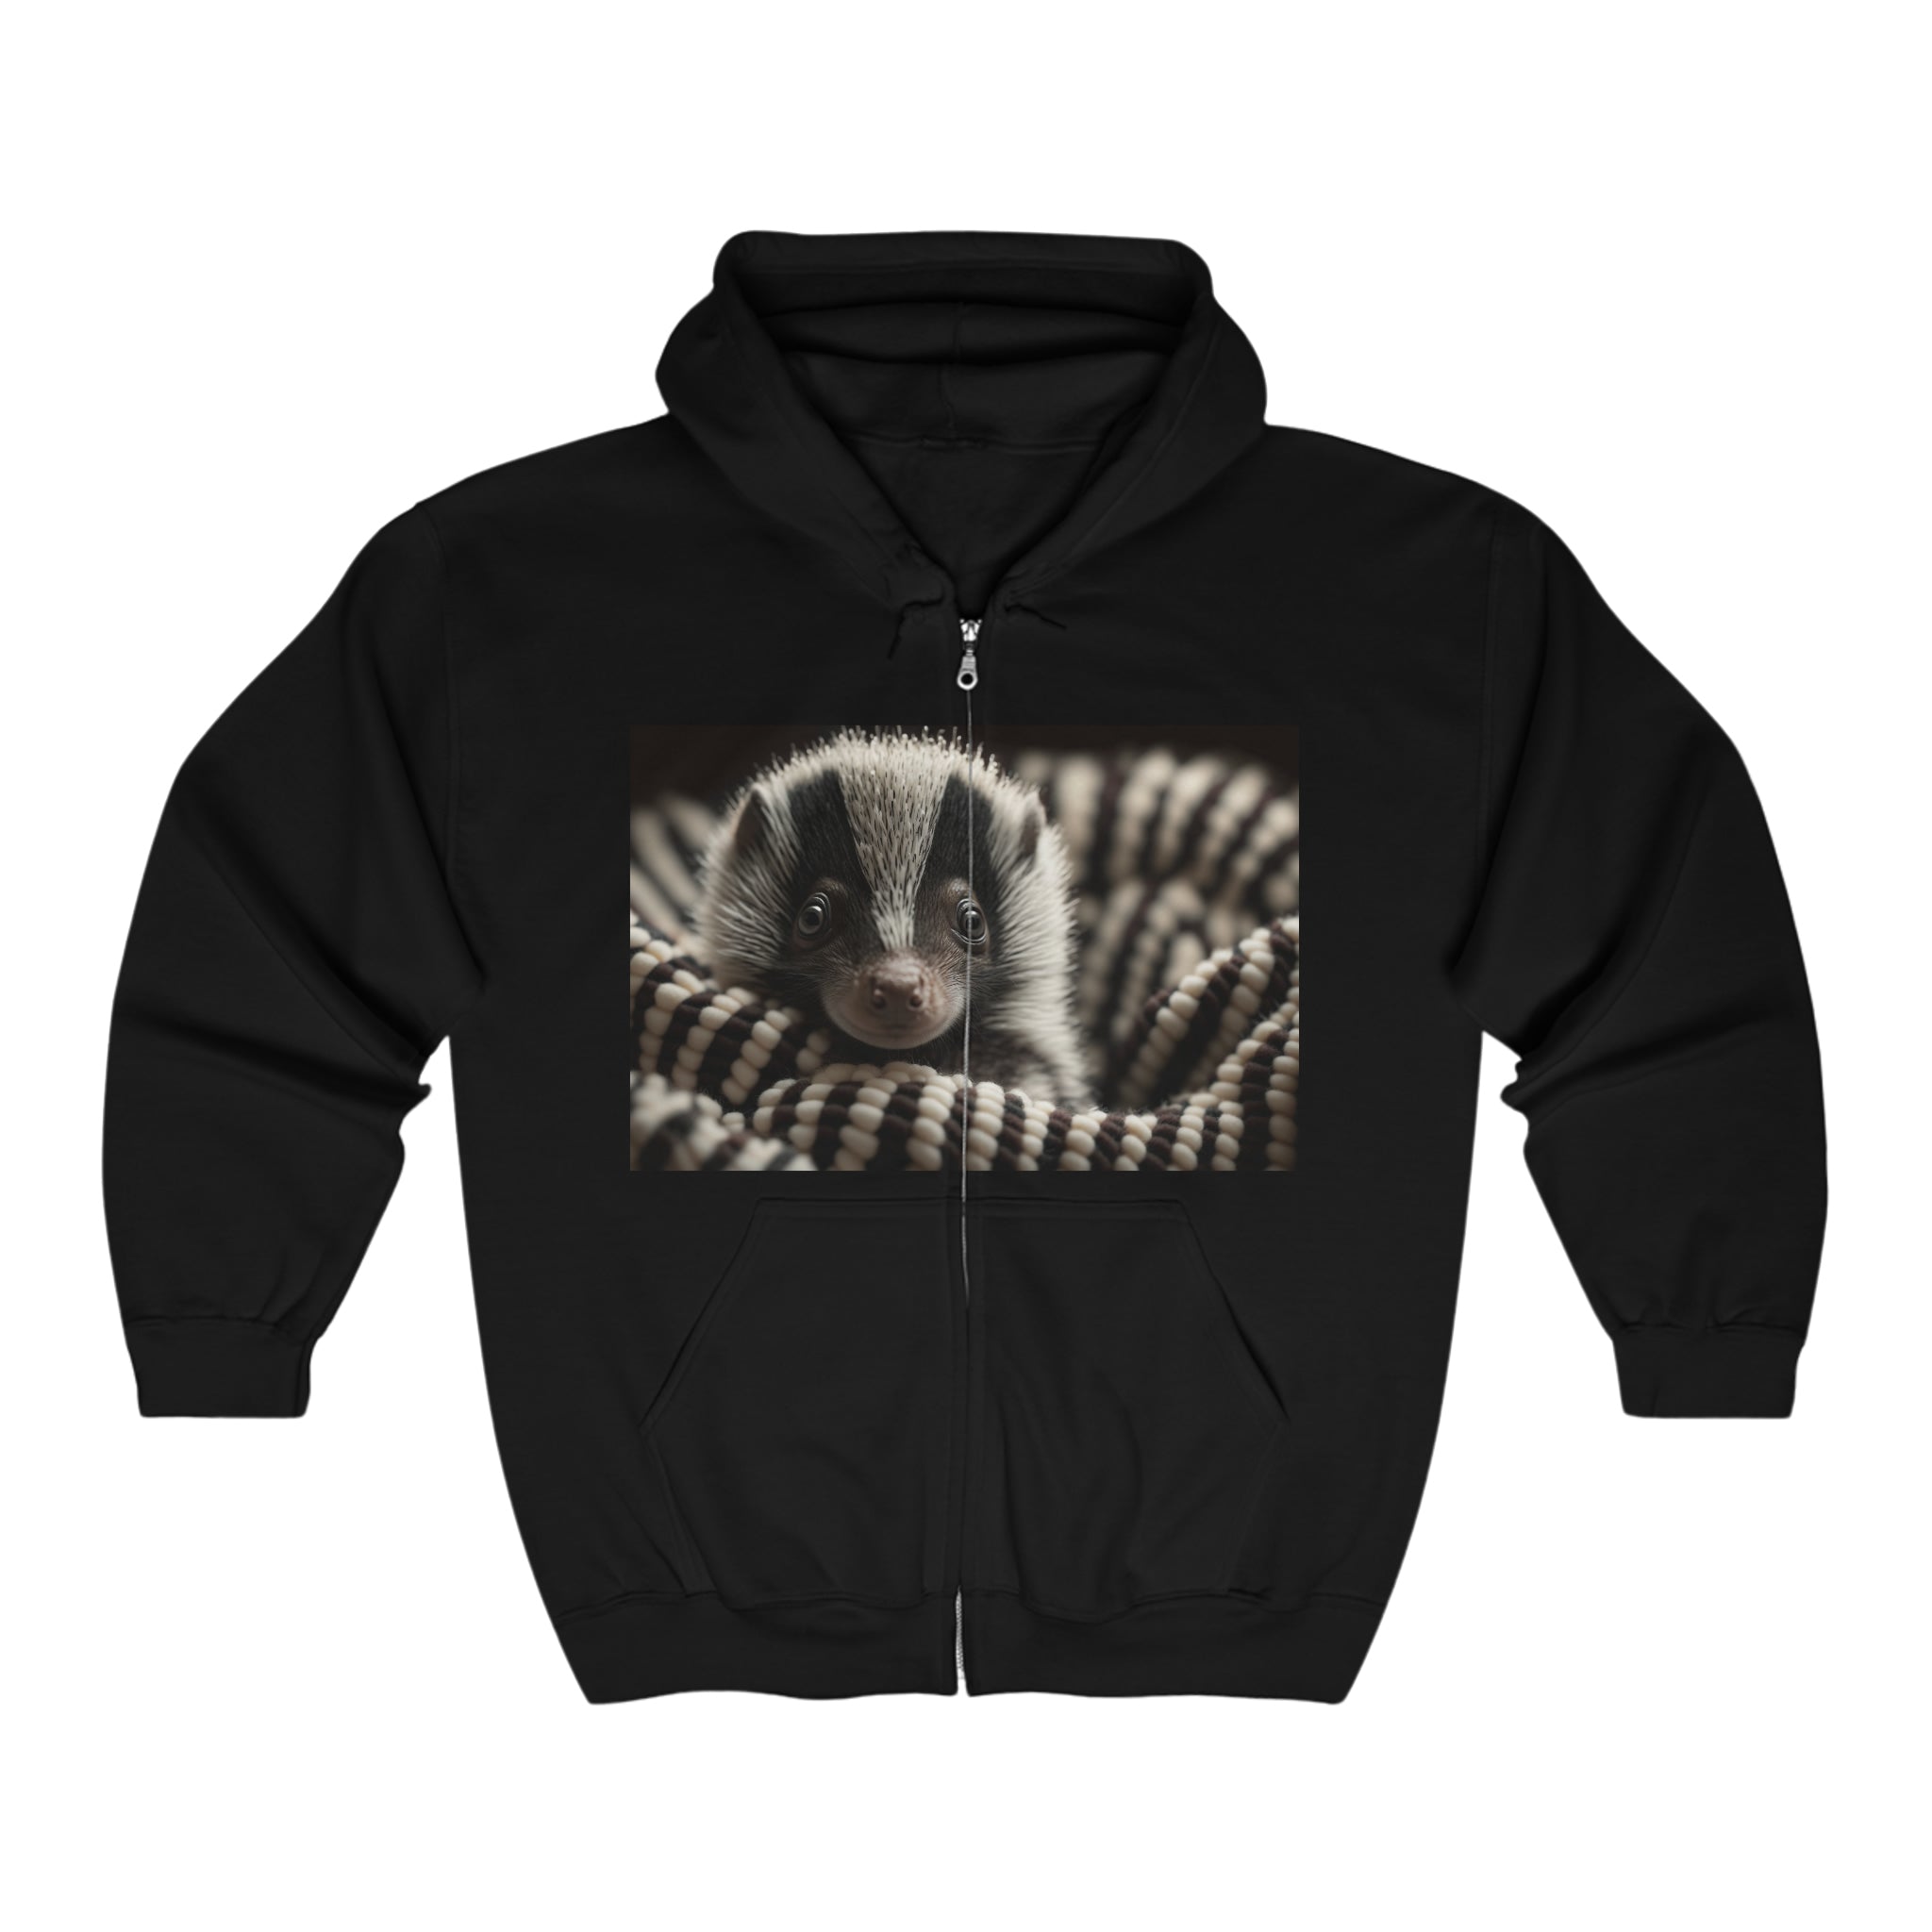 Unisex Heavy Blend™ Full Zip Hooded Sweatshirt - Baby Animals - Skunk